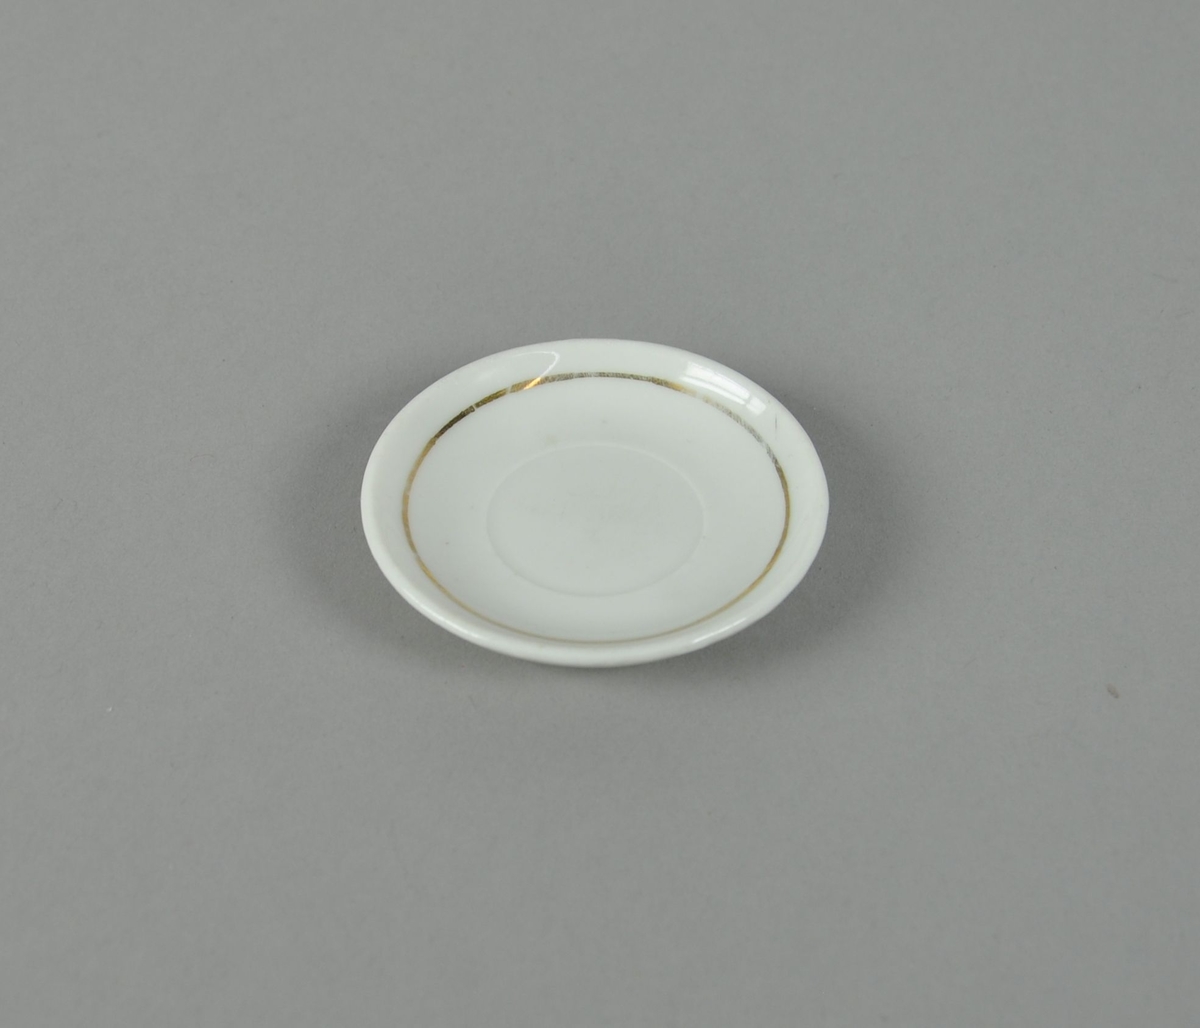 Skål av glassert keramikk. Hvit farge, med dekorativ ring i gullfarge.